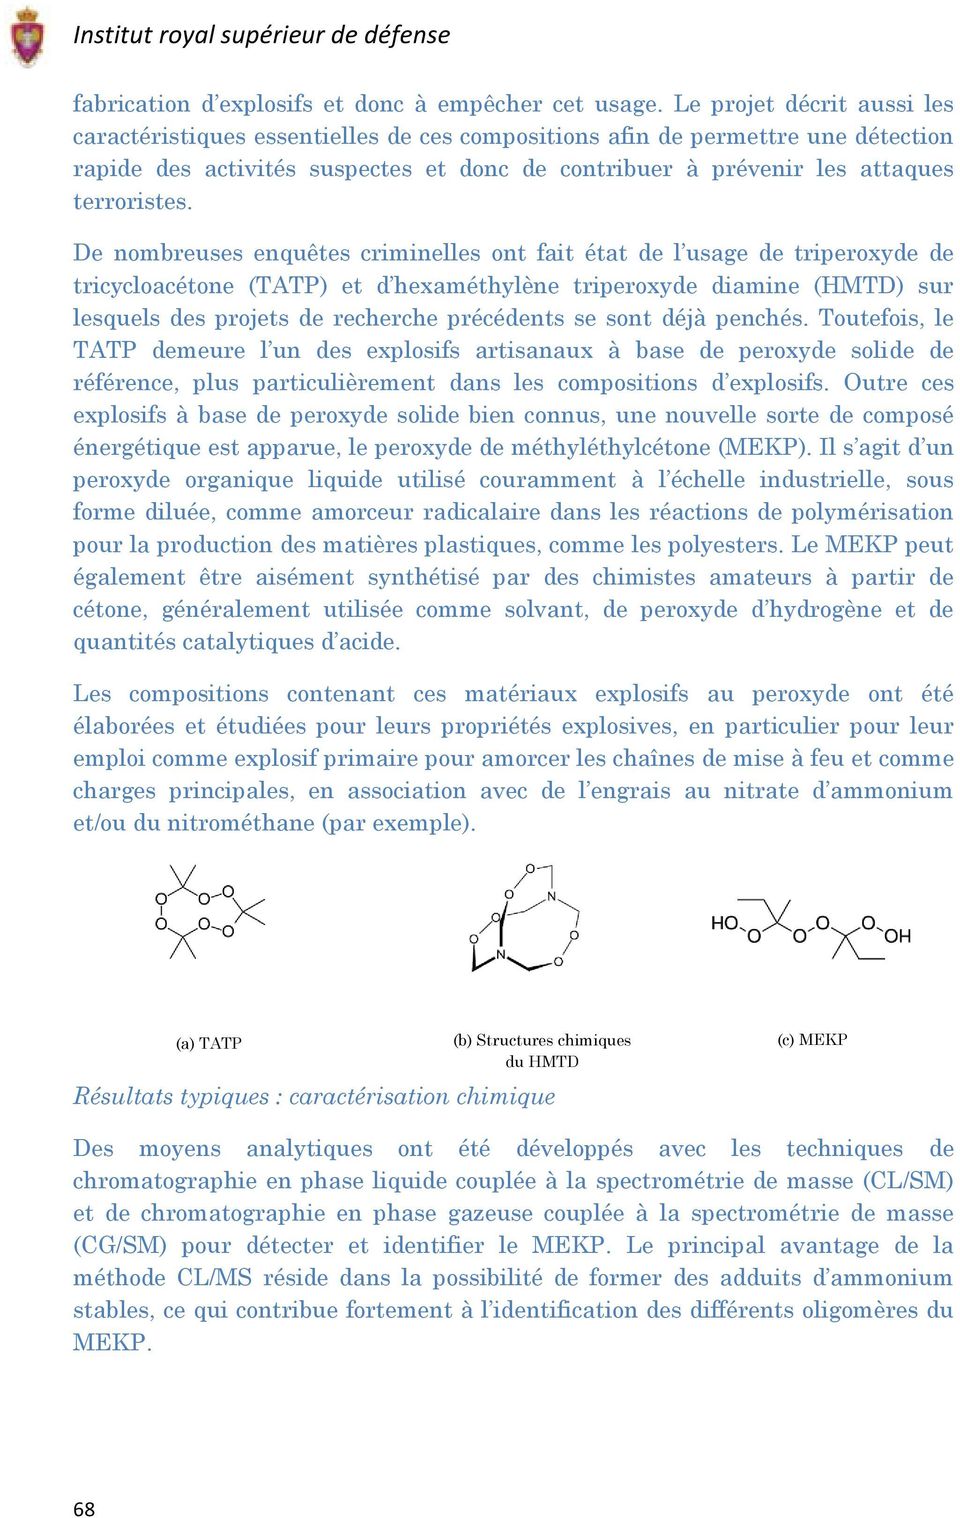 De nombreuses enquêtes criminelles ont fait état de l usage de triperoxyde de tricycloacétone (TATP) et d hexaméthylène triperoxyde diamine (HMTD) sur lesquels des projets de recherche précédents se